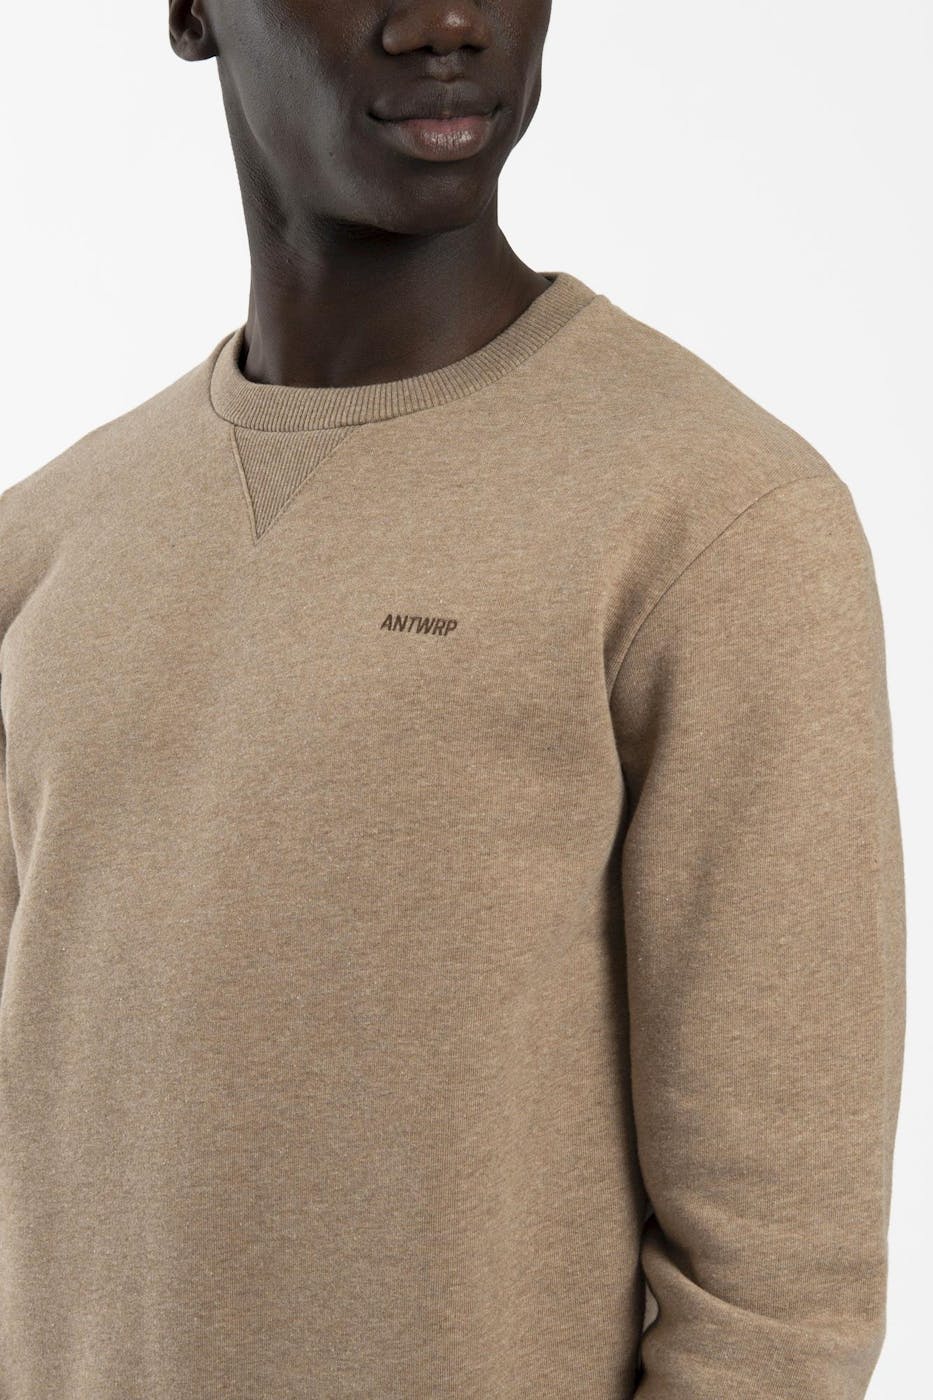 Antwrp - Lichtbruine Basic Logo sweater